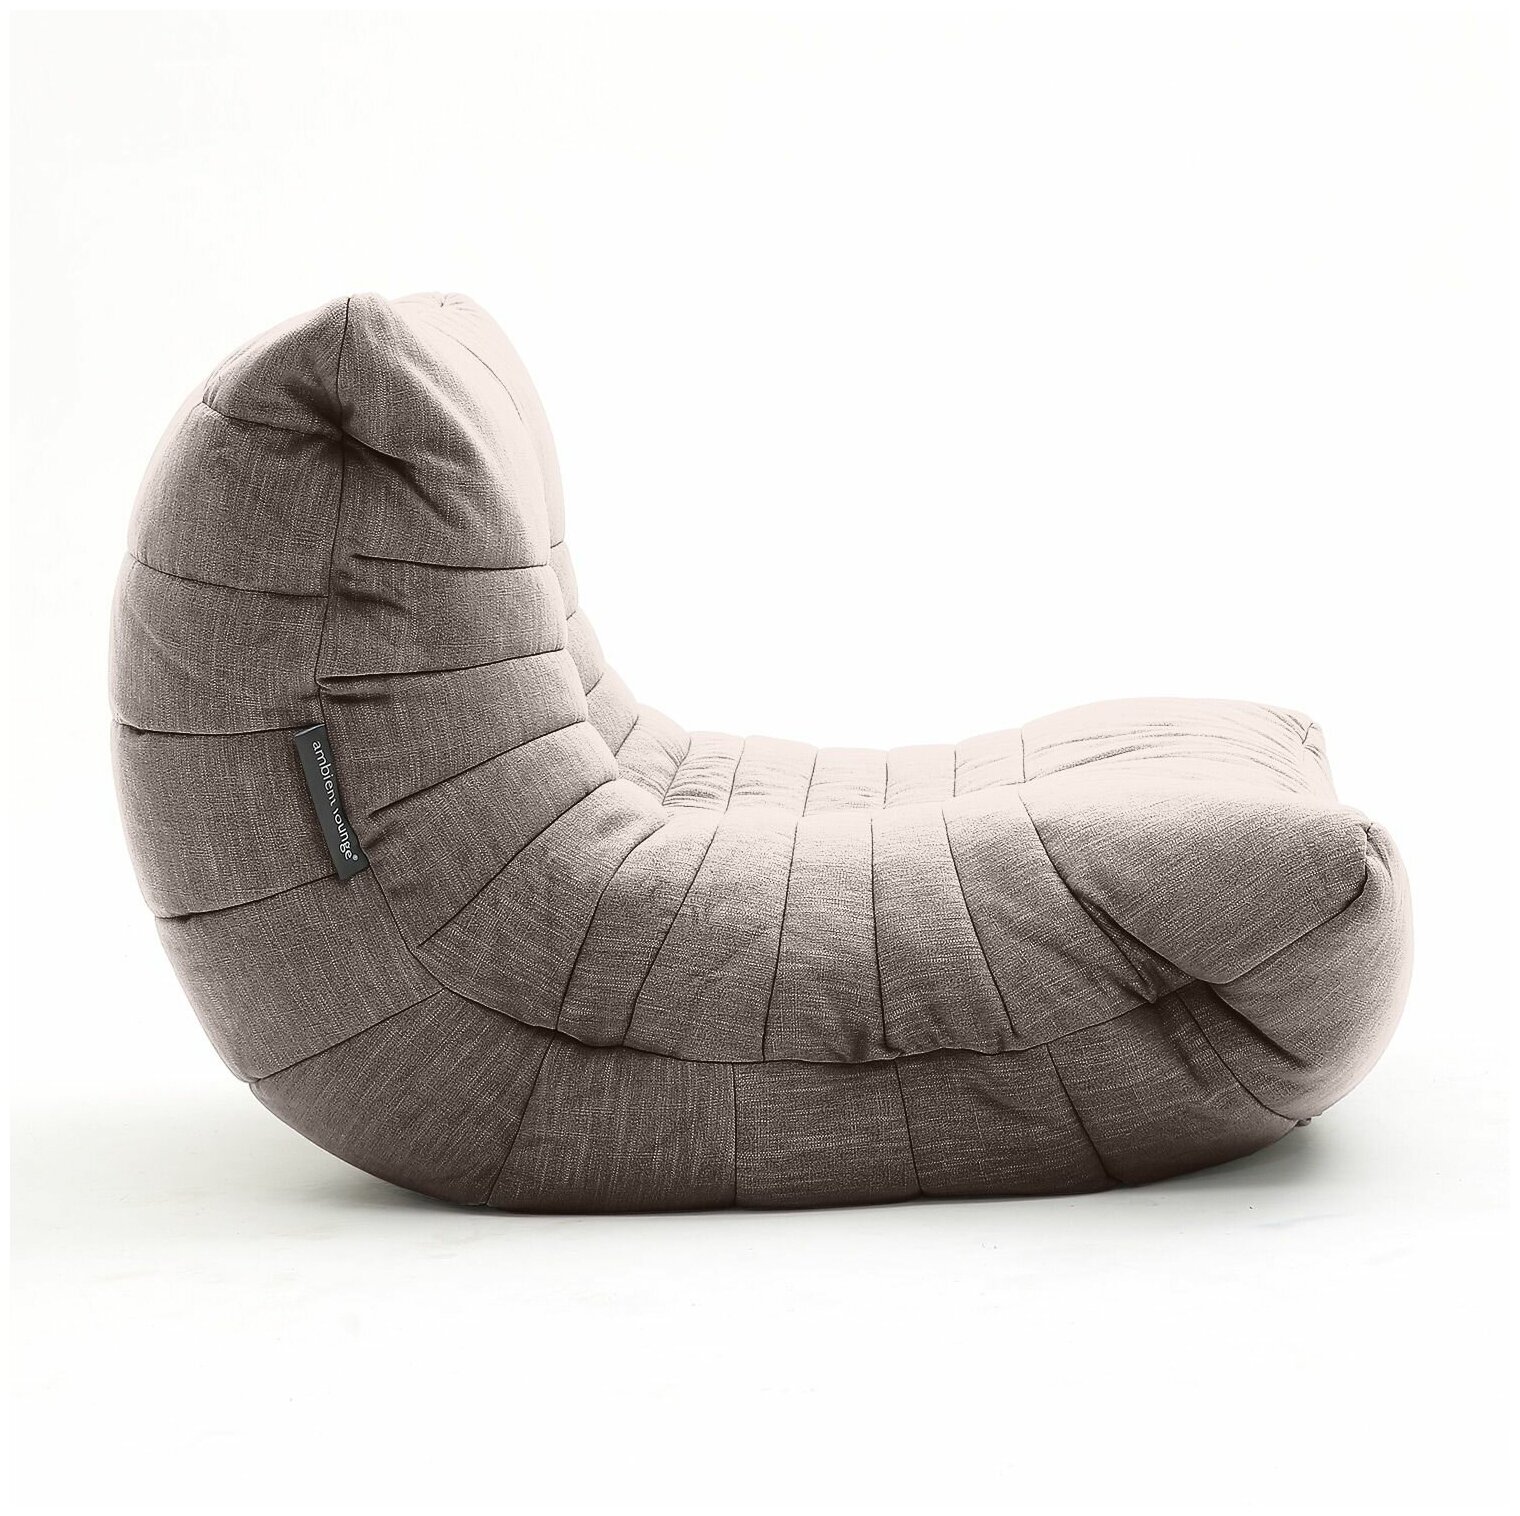 Бескаркасное дизайнерское кресло для отдыха дома aLounge - Acoustic Sofa - Hot Chocolate (шенилл, шоколадный) - лаунж мебель в гостиную, спальню, детскую, офис, на балкон